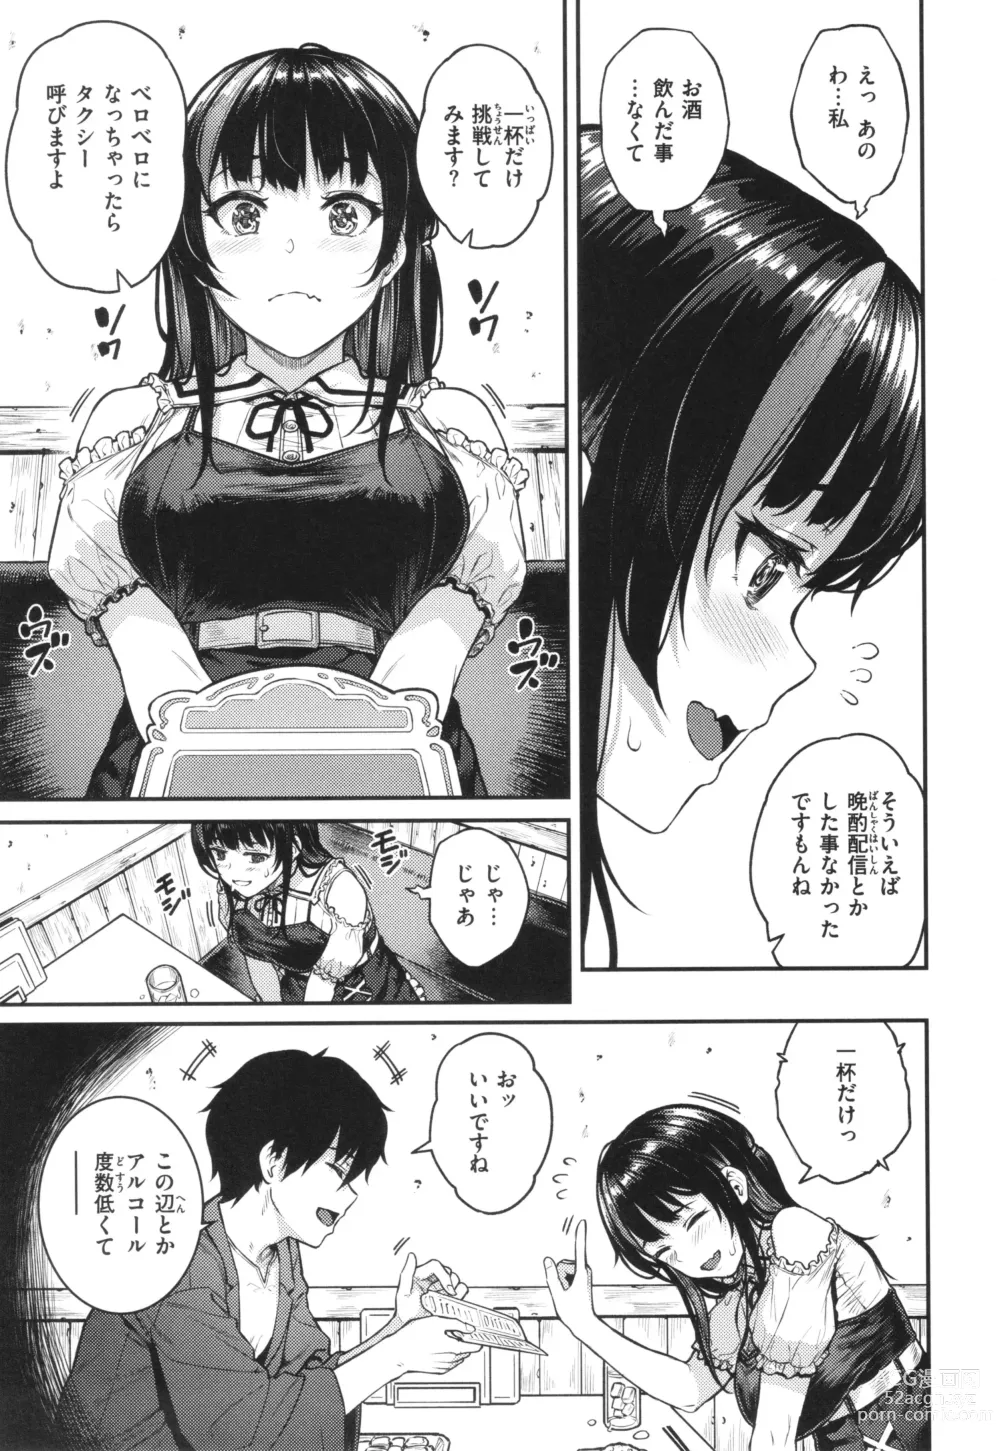 Page 7 of manga Hoshigarikko - Excited Girls Play + Toranoana Gentei Tokuten COMICS ROUGH&CHARACTAR NOTES